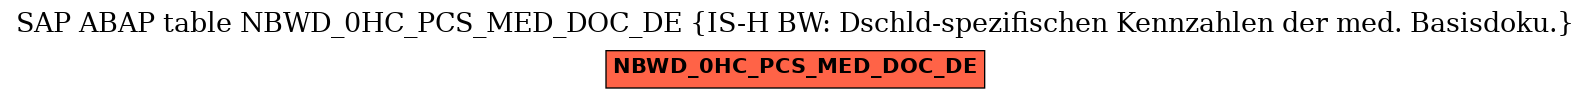 E-R Diagram for table NBWD_0HC_PCS_MED_DOC_DE (IS-H BW: Dschld-spezifischen Kennzahlen der med. Basisdoku.)